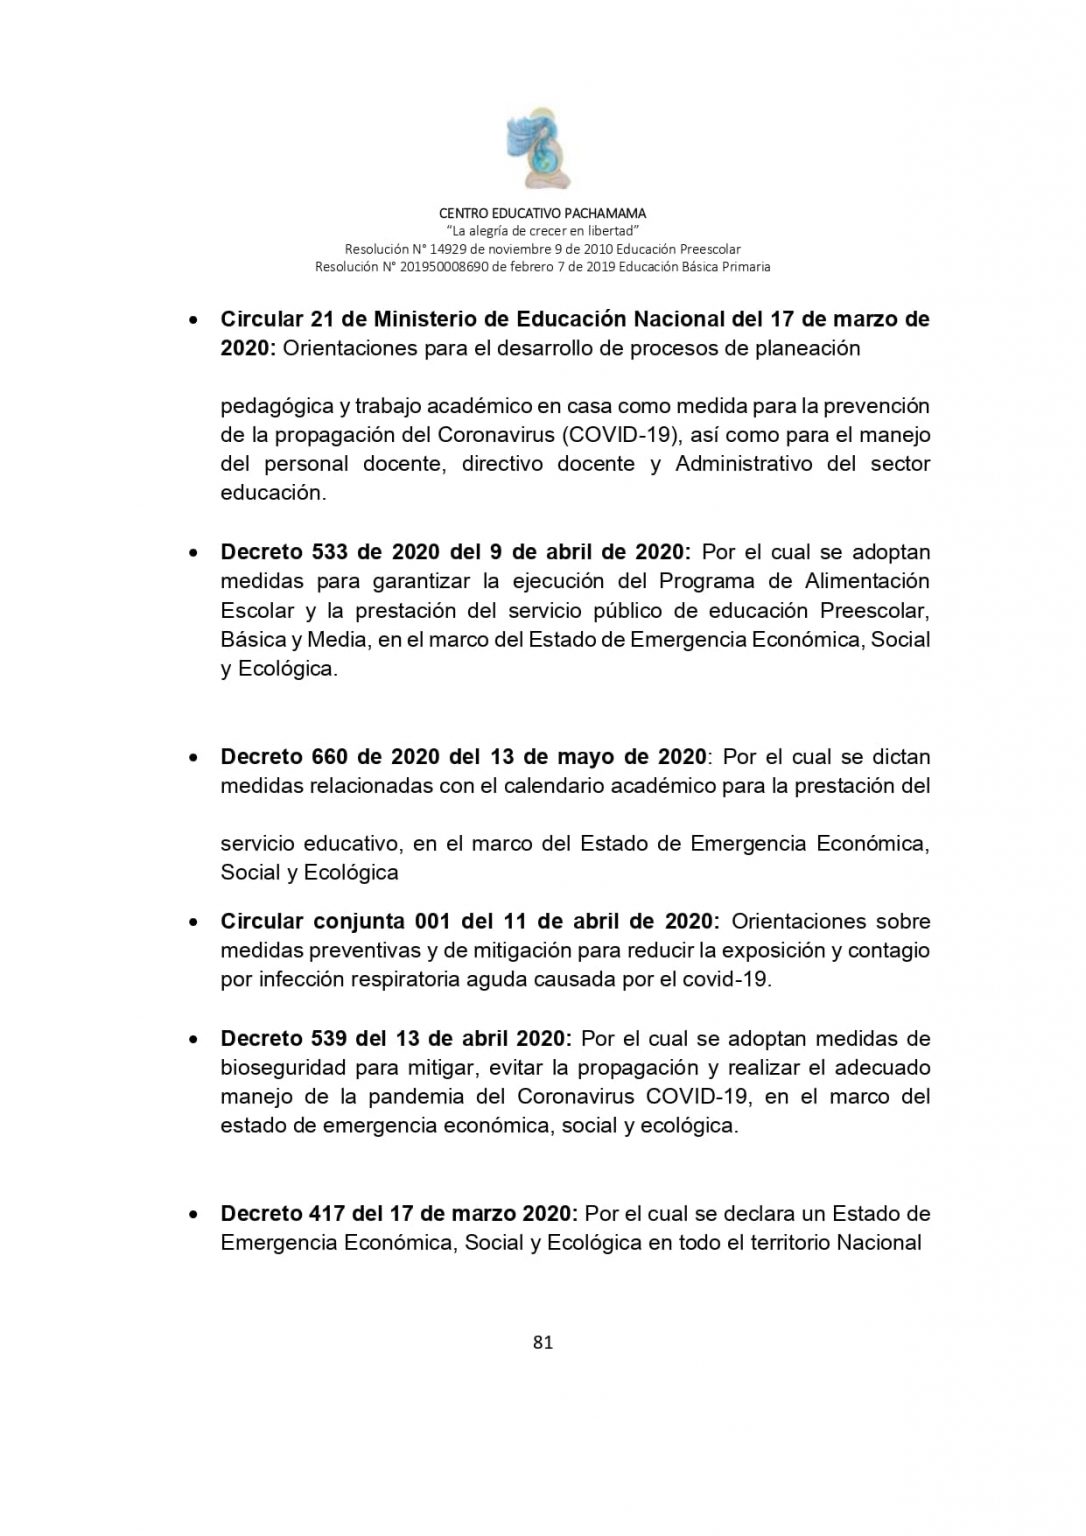 PROTOCOLO DE BIOSEGURIDAD PACHAMAMA Última Versión (3)-convertido_page-0081